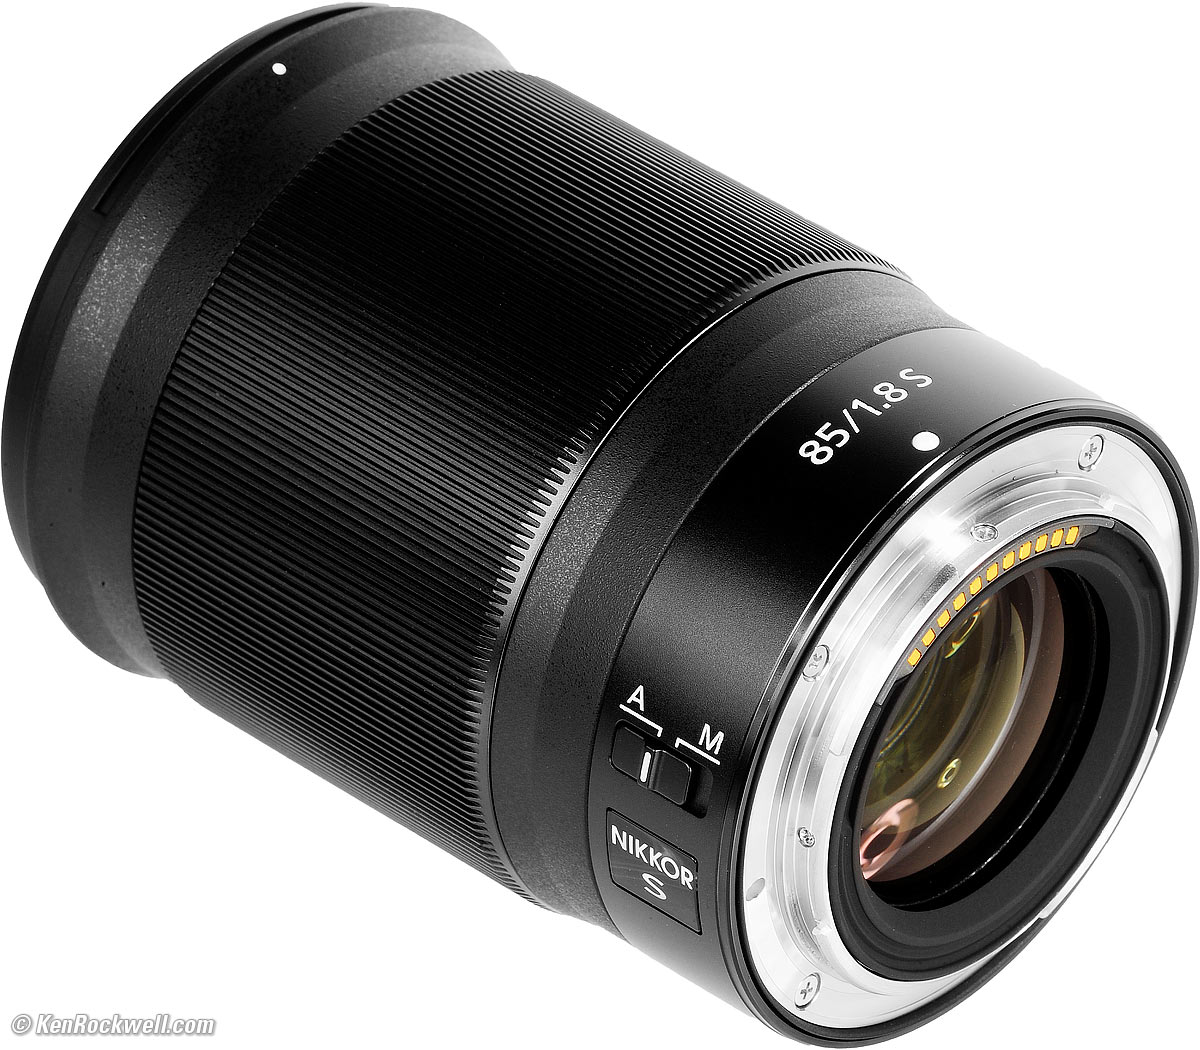 Nikon Z 85mm f/1.8 Review